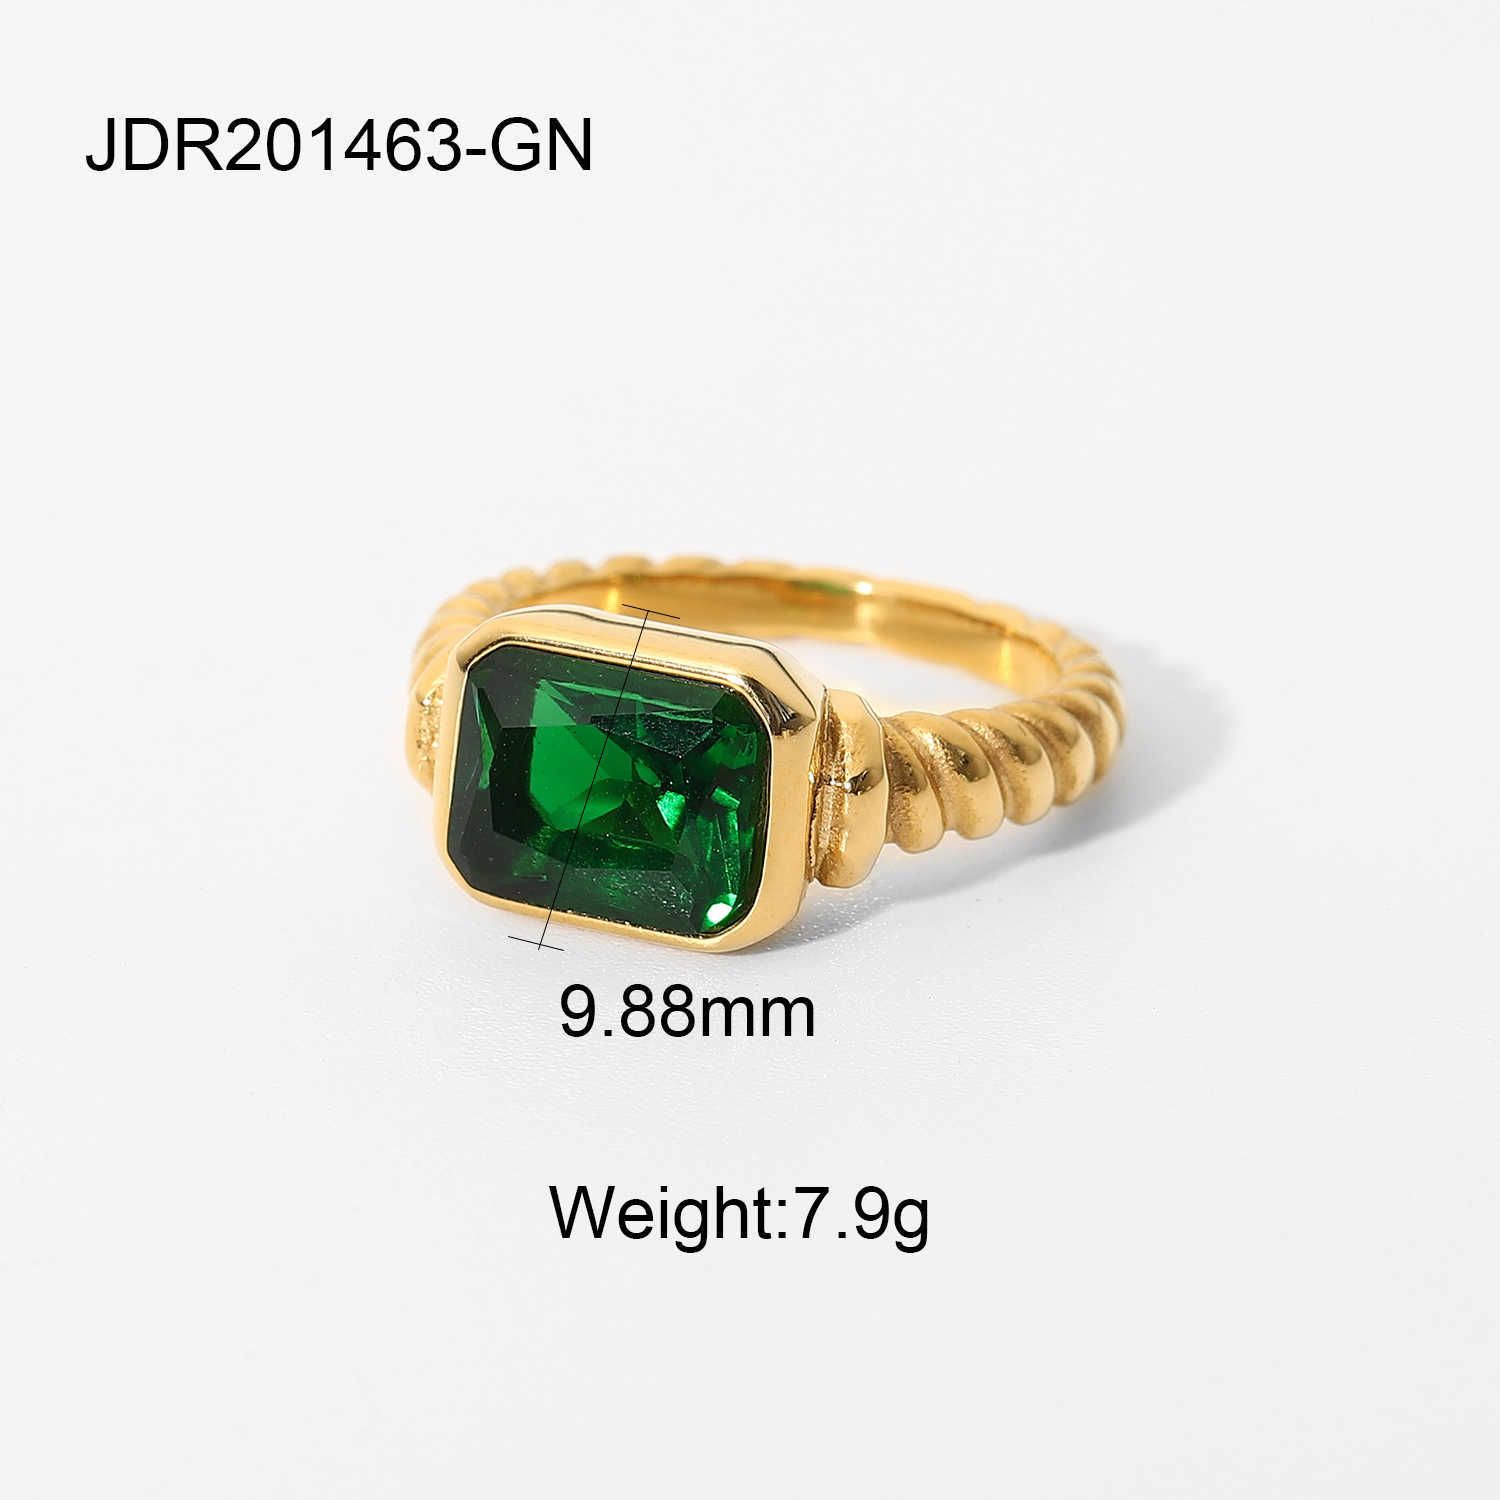 Jdr201463-gn